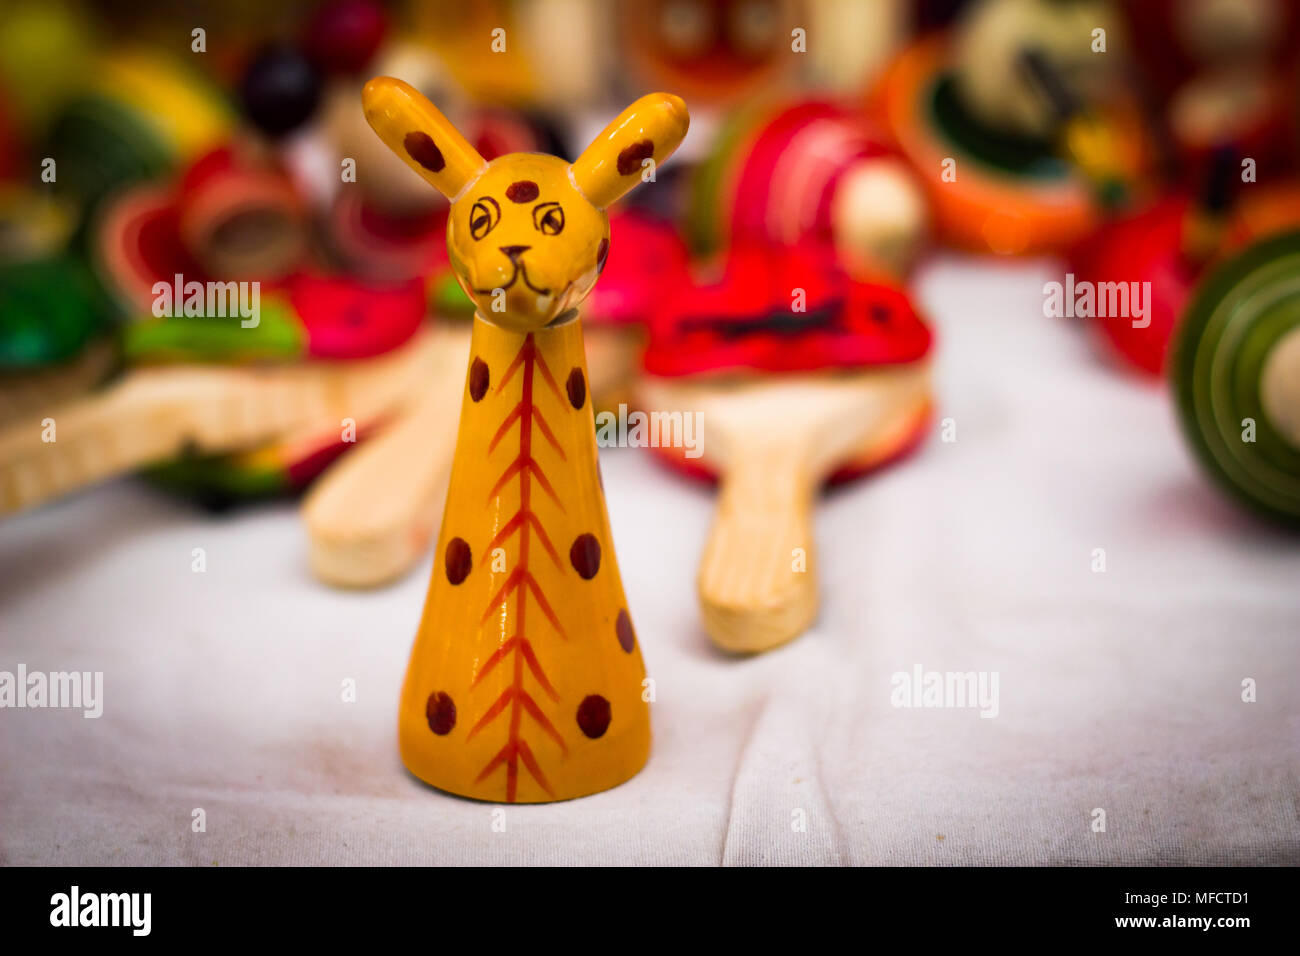 Un giallo giraffa in legno figura giocattolo vintage contro uno sfondo sfocato Foto Stock